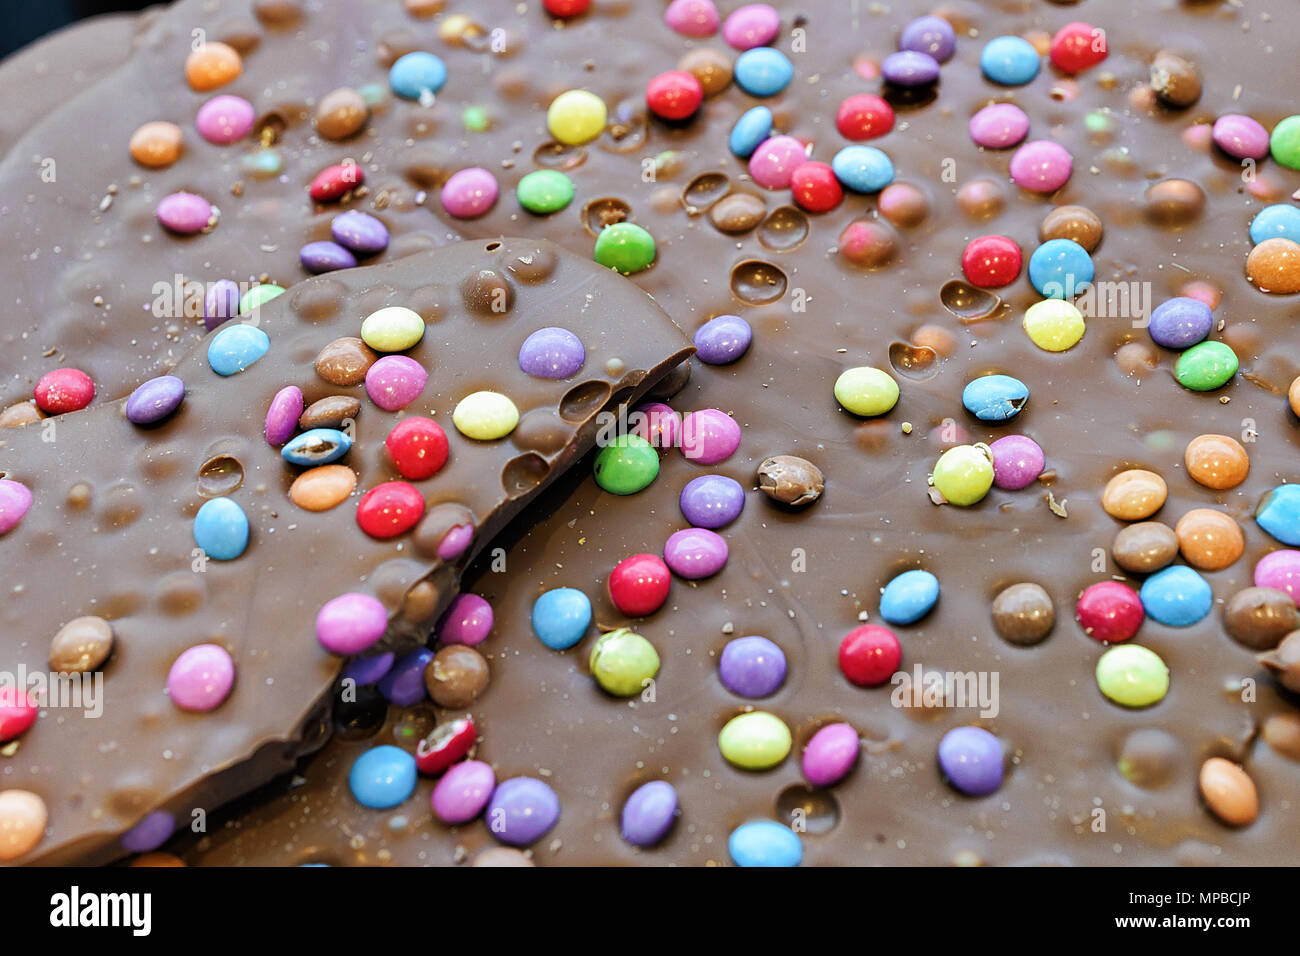 Europe Switzerland Zurich Chocolate Shop Stockfotos und -bilder Kaufen -  Alamy